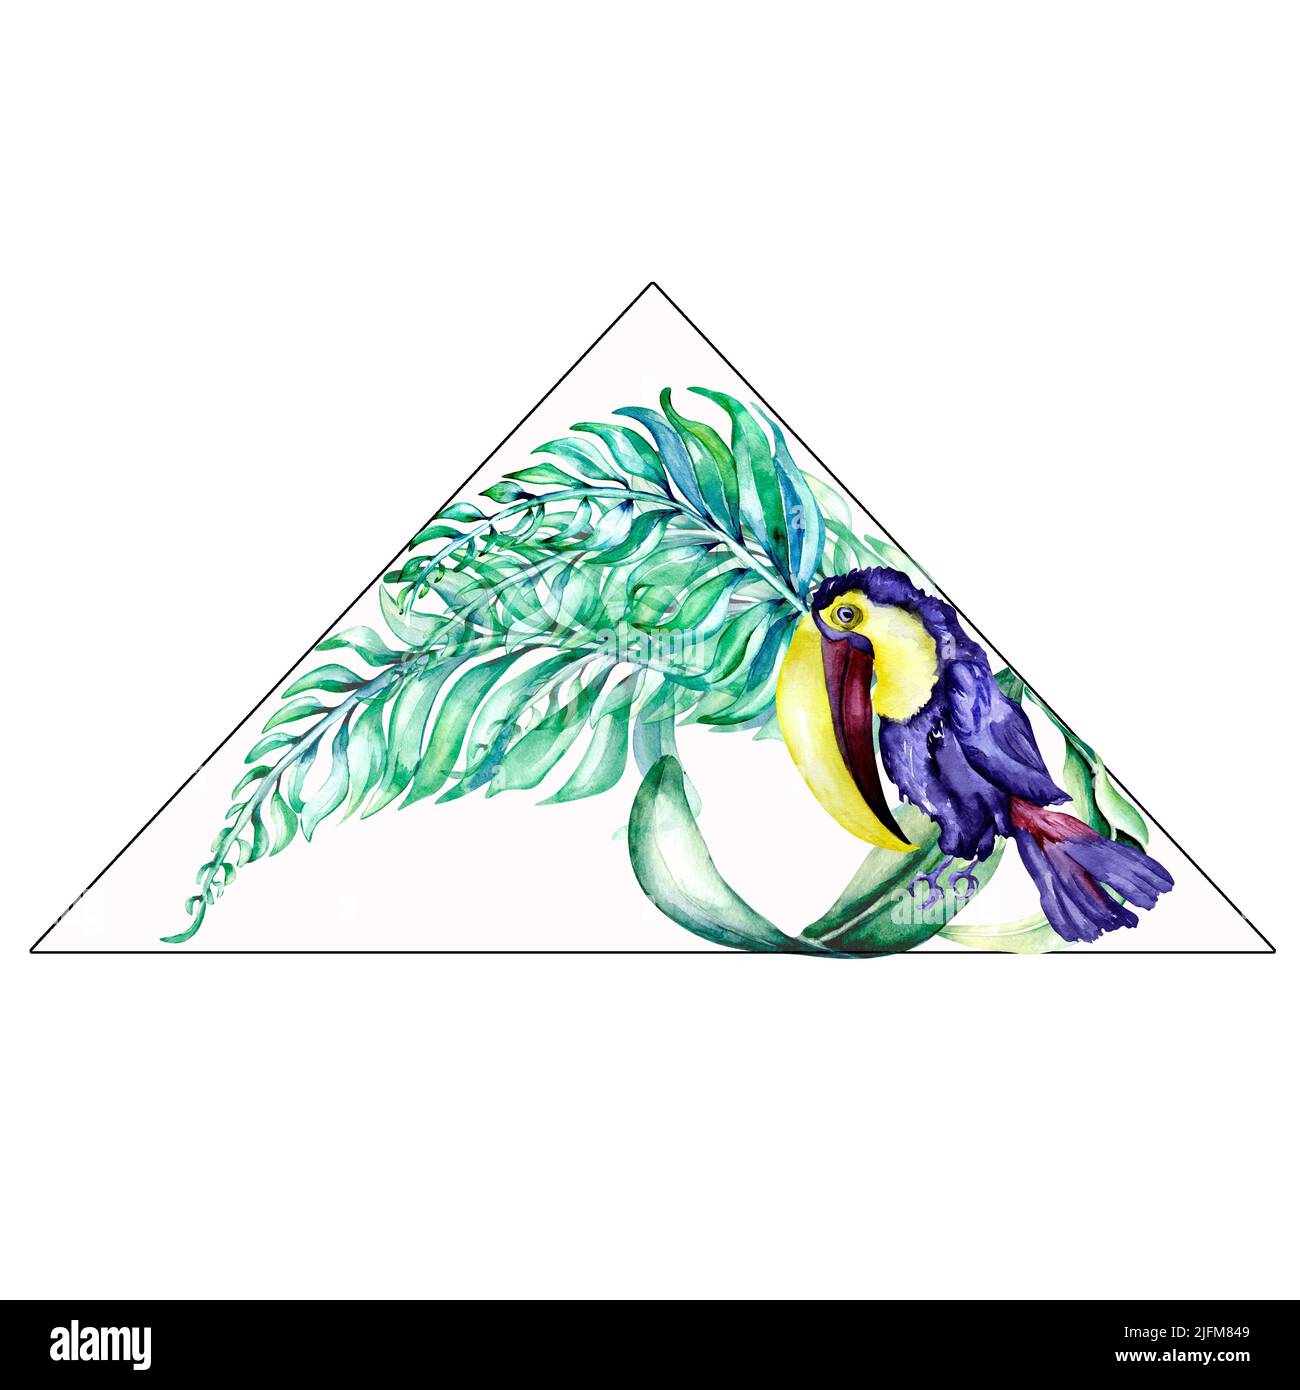 Dreieck-Etikett von Palmblättern mit tropischer Vogel Tukan Aquarell-Illustration auf weiß. Exotische mehrfarbige Pflanzen, grüne, blaue Blätter handbemalt. D Stockfoto